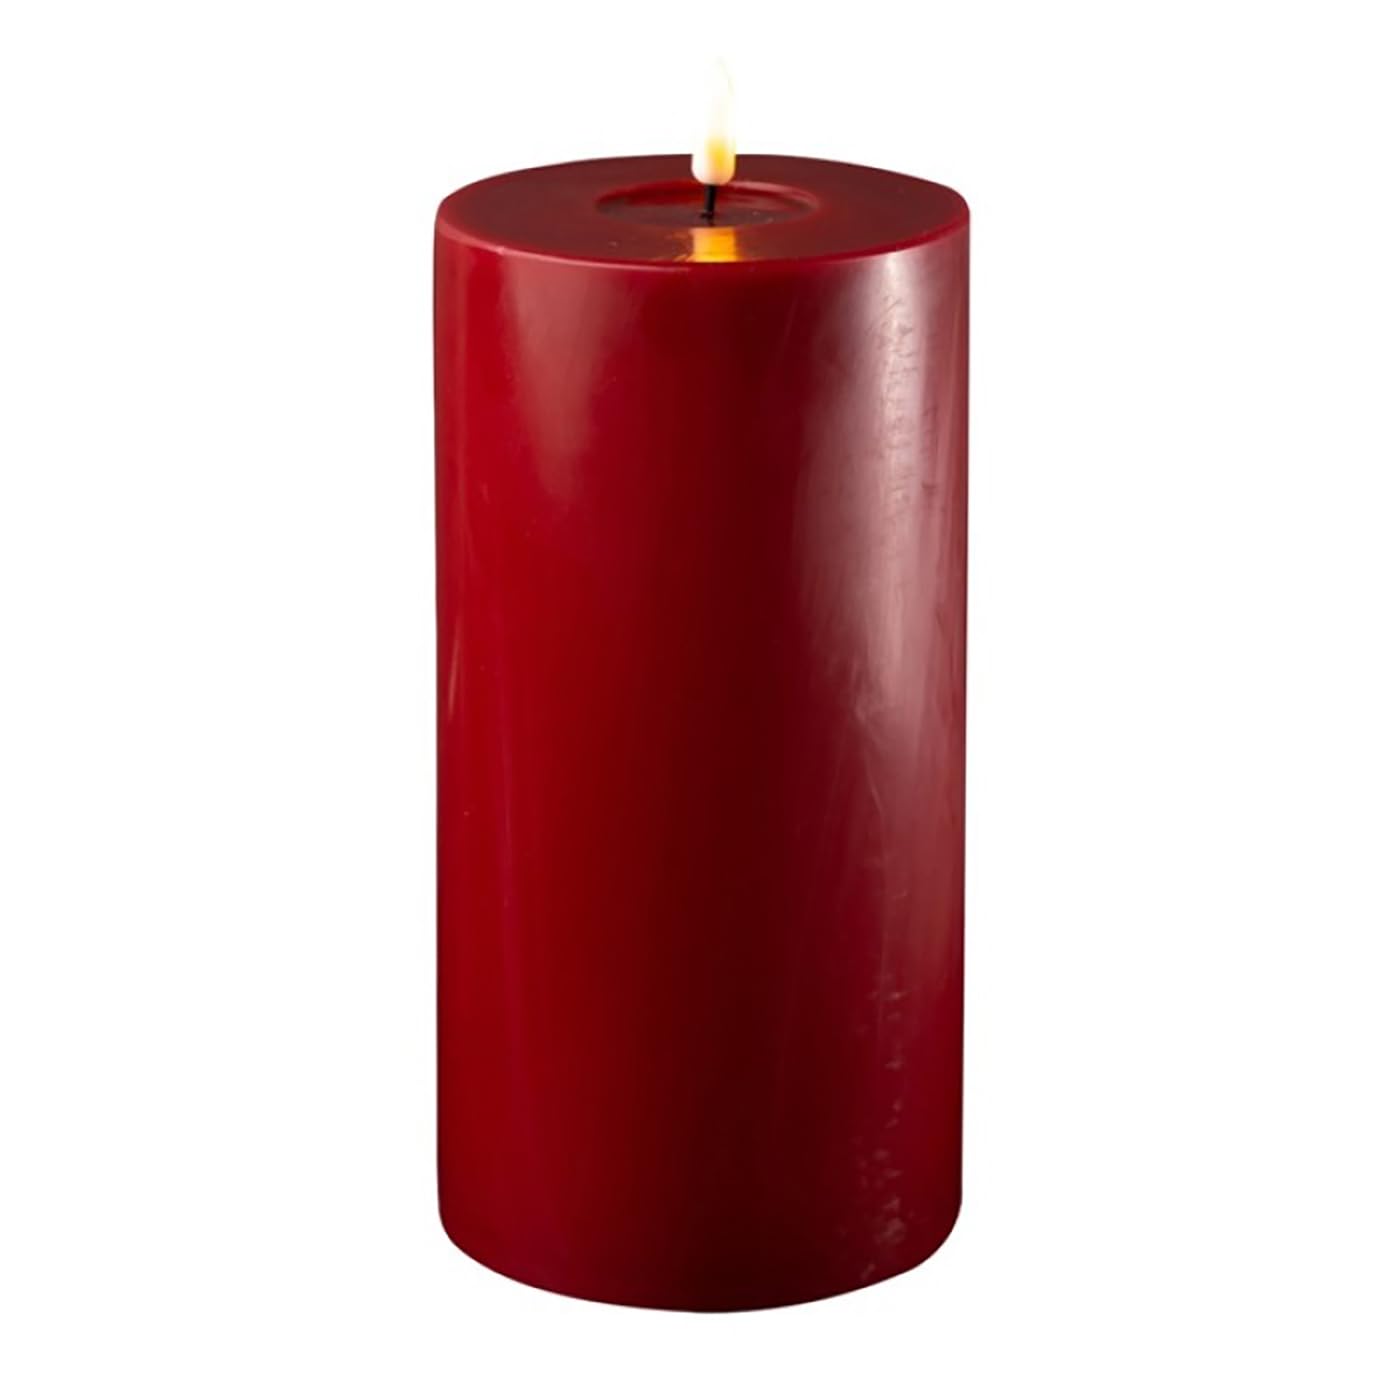 ReWu LED Kerze Deluxe Homeart, Indoor LED-Kerze mit realistischer Flamme auf einem Echtwachsspiegel, warmweißes Licht -Bordeaux 10 x 20 cm